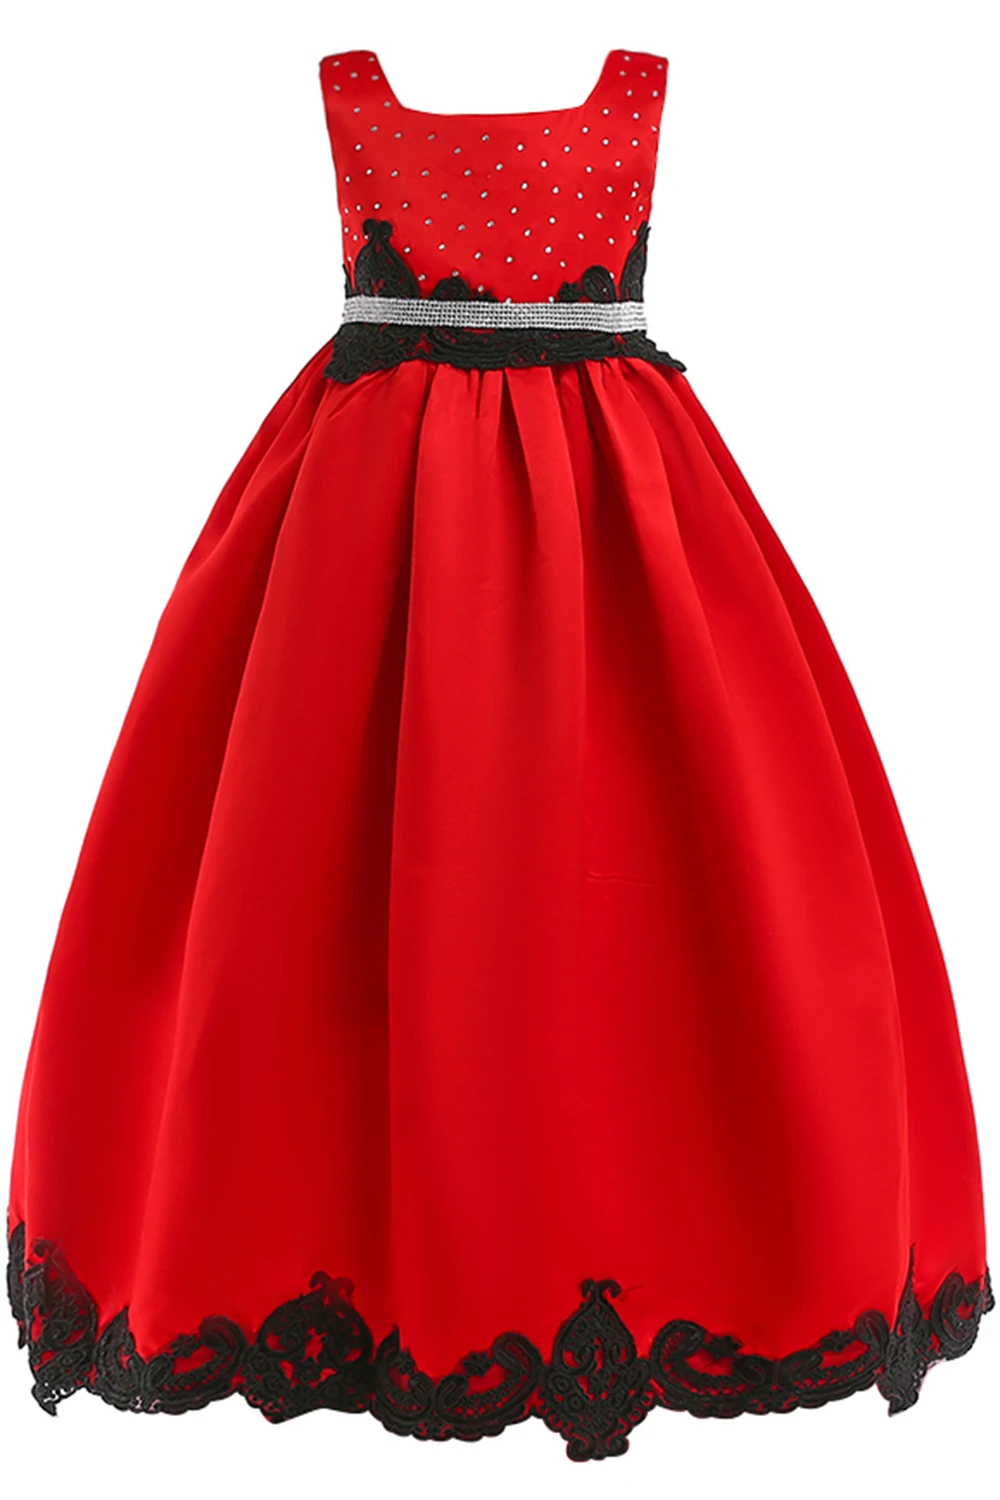 Платье принцессы из сатина, расшитое бисером; Длина до пола; Красные Платья с цветочным узором для девочек; коллекция года; черное праздничное платье с аппликацией для девочек; платья для первого причастия